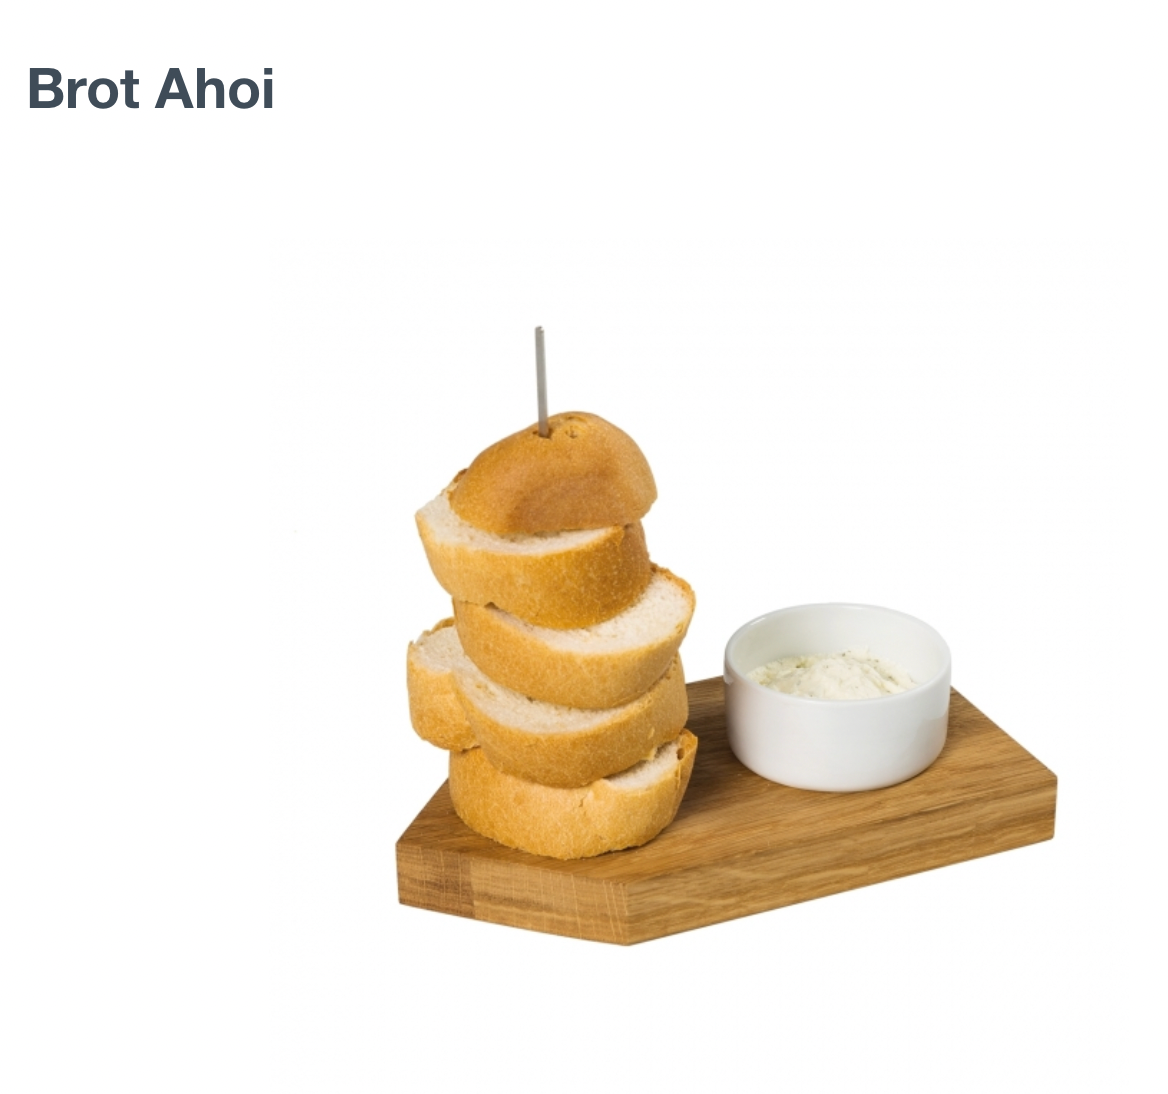 Brot Ahoi von Raumgestalt, Brett aus Eiche mit Spieß für Brot und Porzellanschale